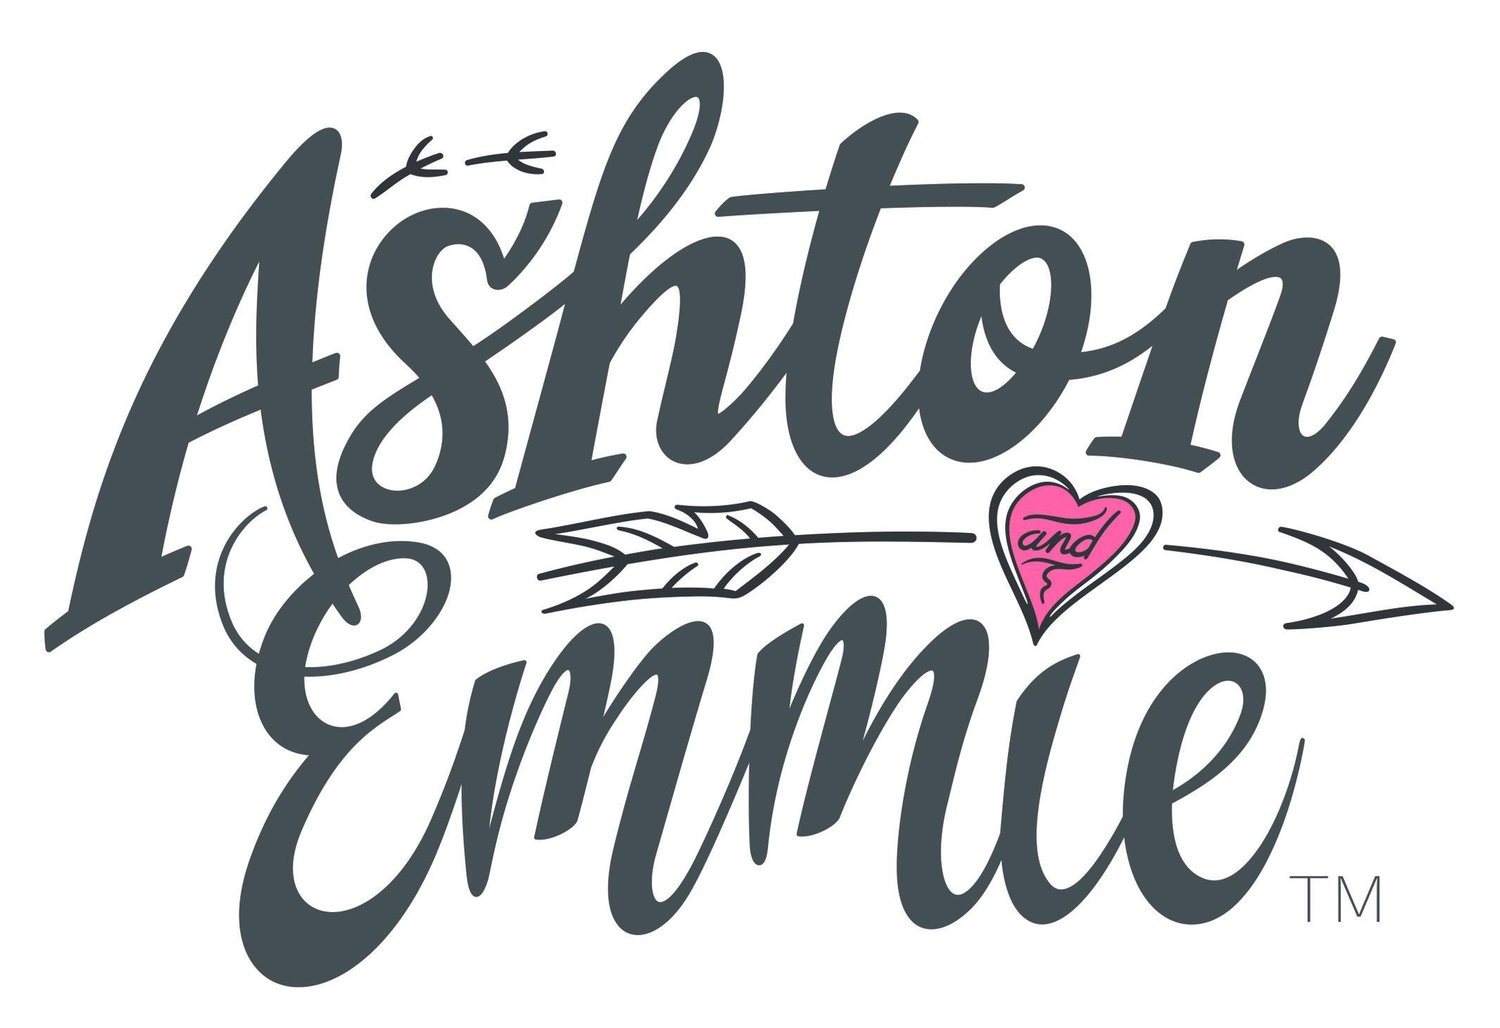 Ashton and Emmie